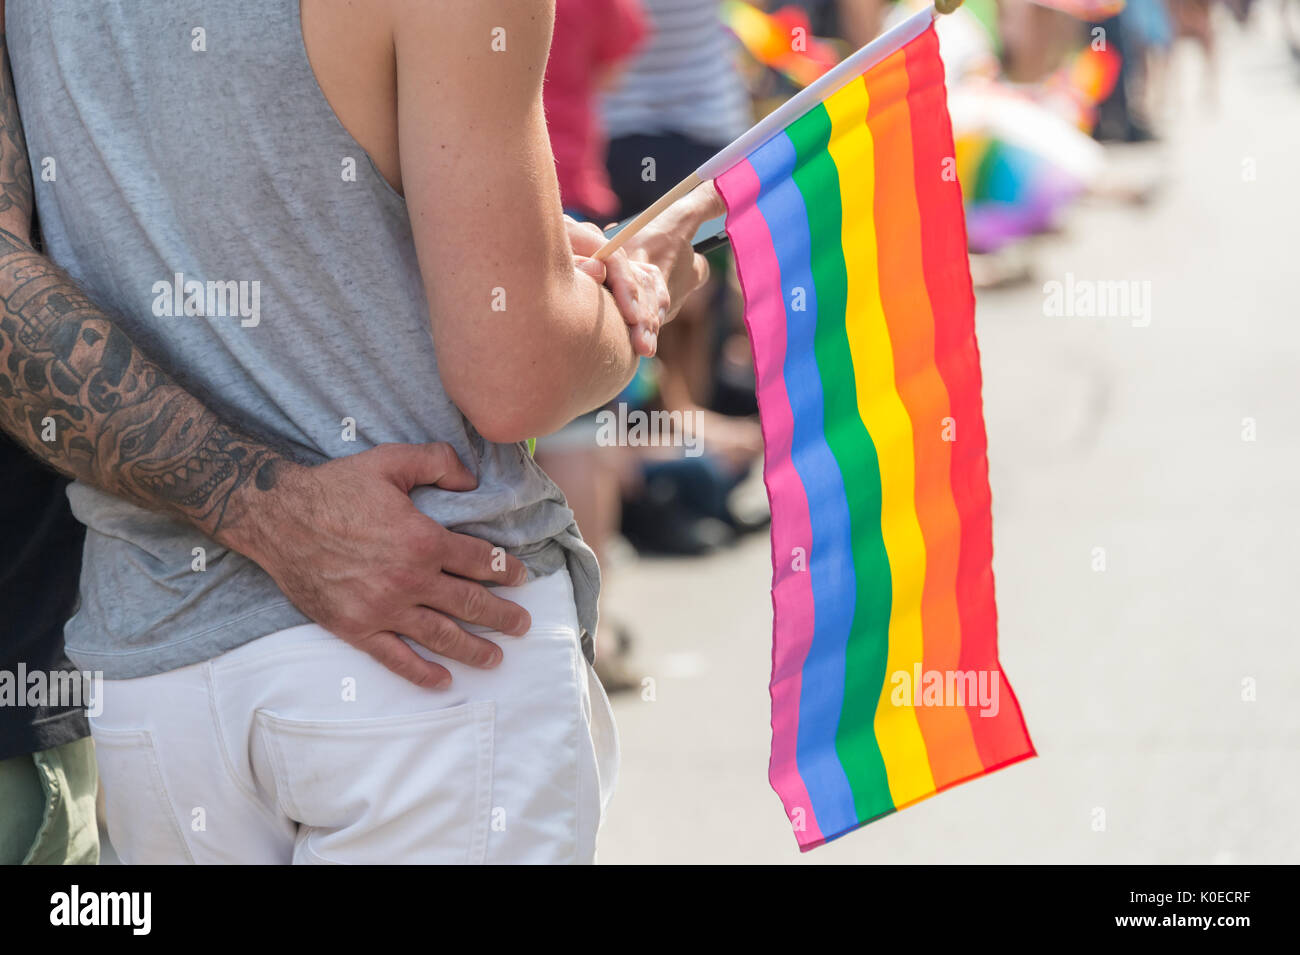 Montréal, Canada - 20 août 2017 : vue arrière d'un gay homme couple tenant un drapeau arc-en-ciel gay gay pride parade à Montréal Banque D'Images